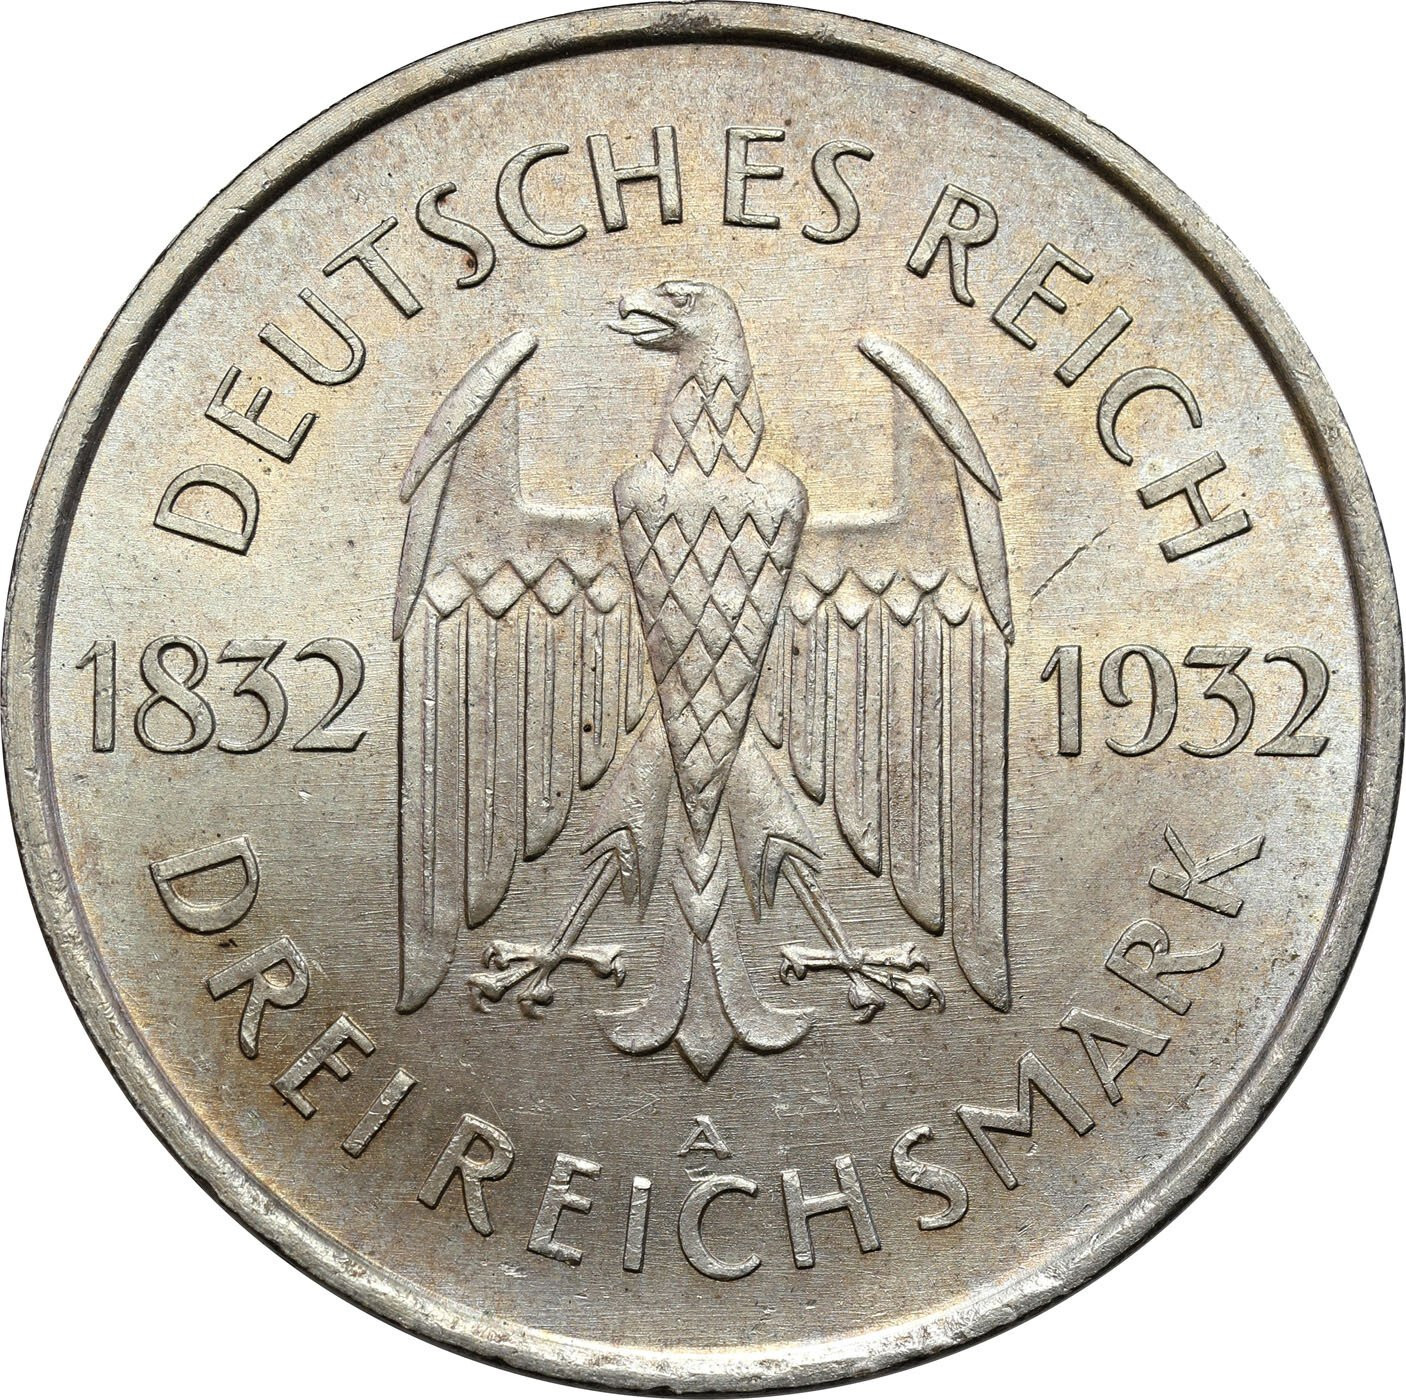 Niemcy, Weimar. 3 marki 1932 A, Goethe - PIĘKNE